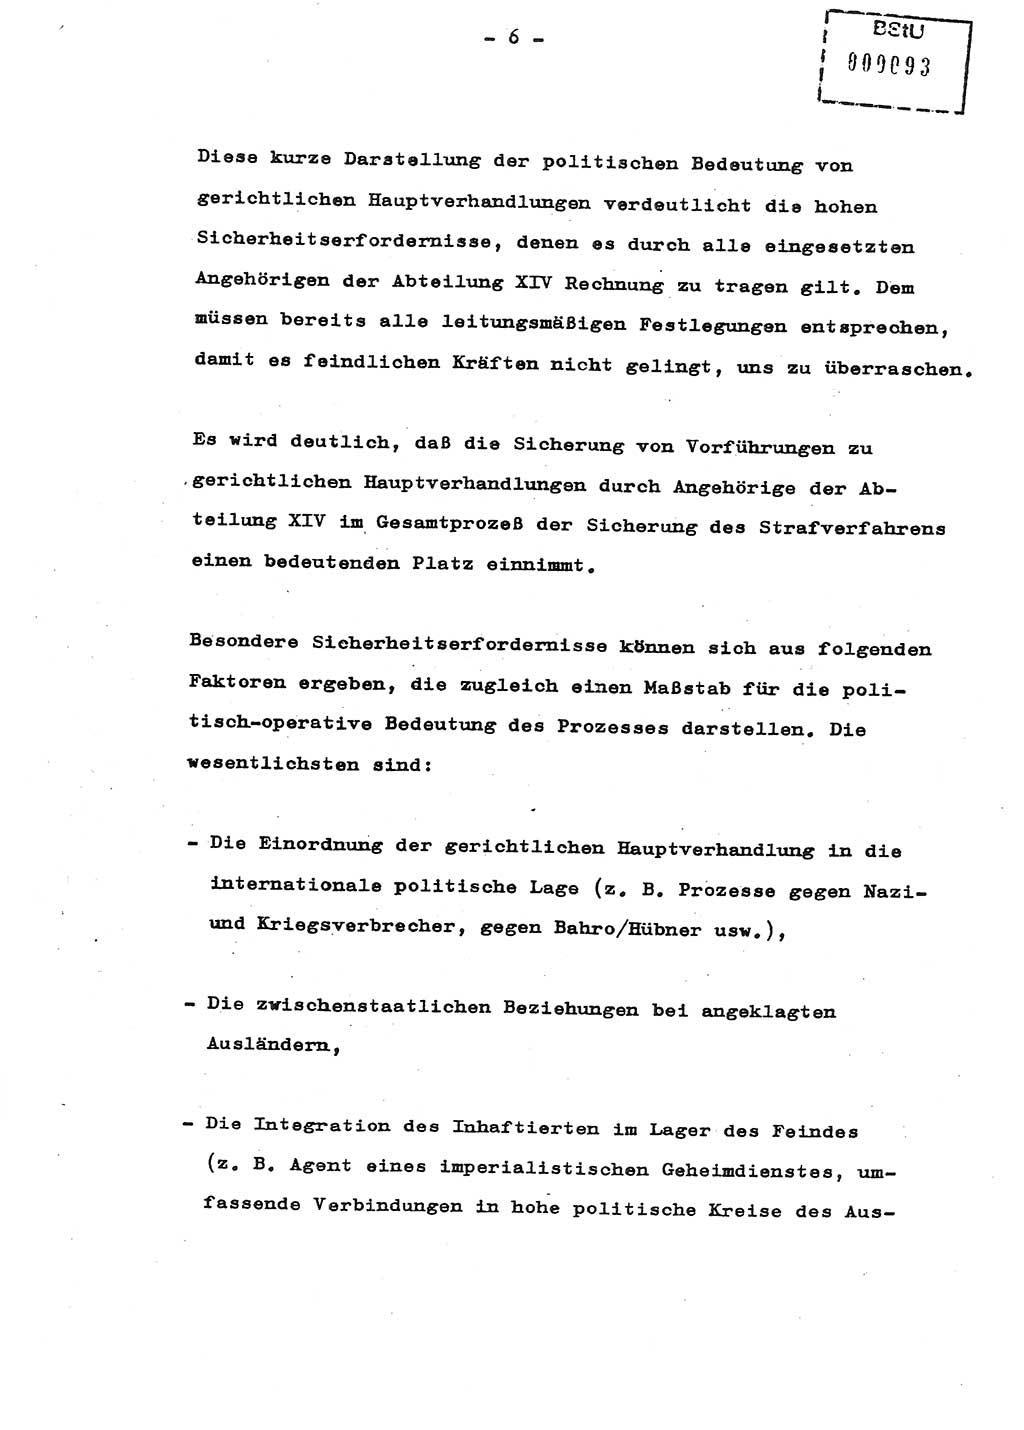 Schulungsmaterial Exemplar-Nr.: 8, Ministerium für Staatssicherheit [Deutsche Demokratische Republik (DDR)], Abteilung (Abt.) ⅩⅣ, Berlin 1987, Seite 6 (Sch.-Mat. Expl. 8 MfS DDR Abt. ⅩⅣ /87 1987, S. 6)